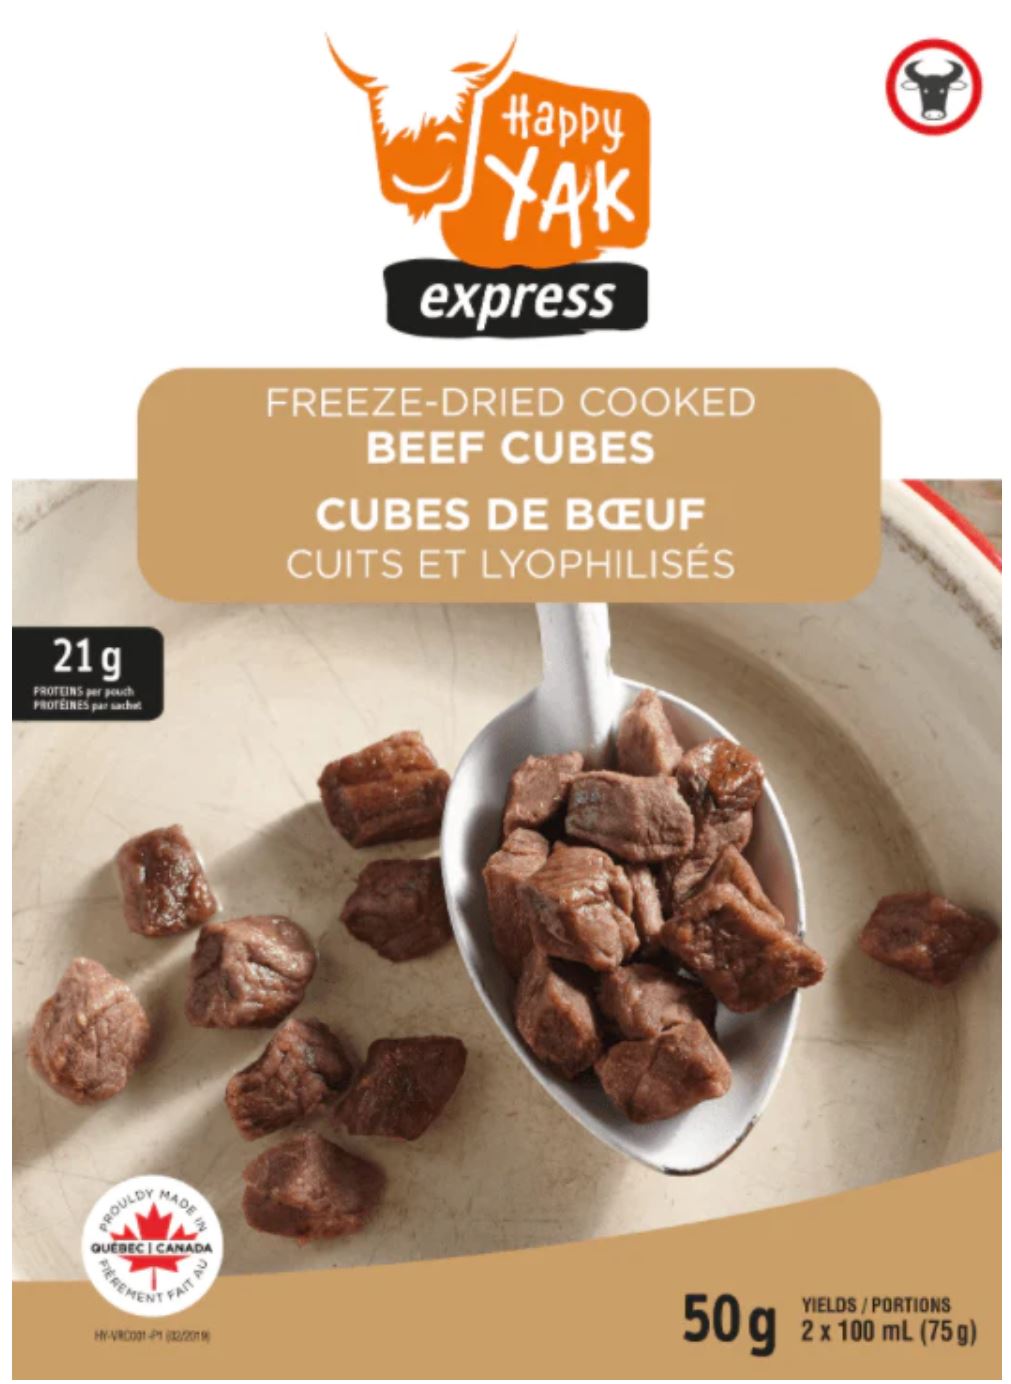 Happy Yak Cubes de boeuf cuits lyophilisés